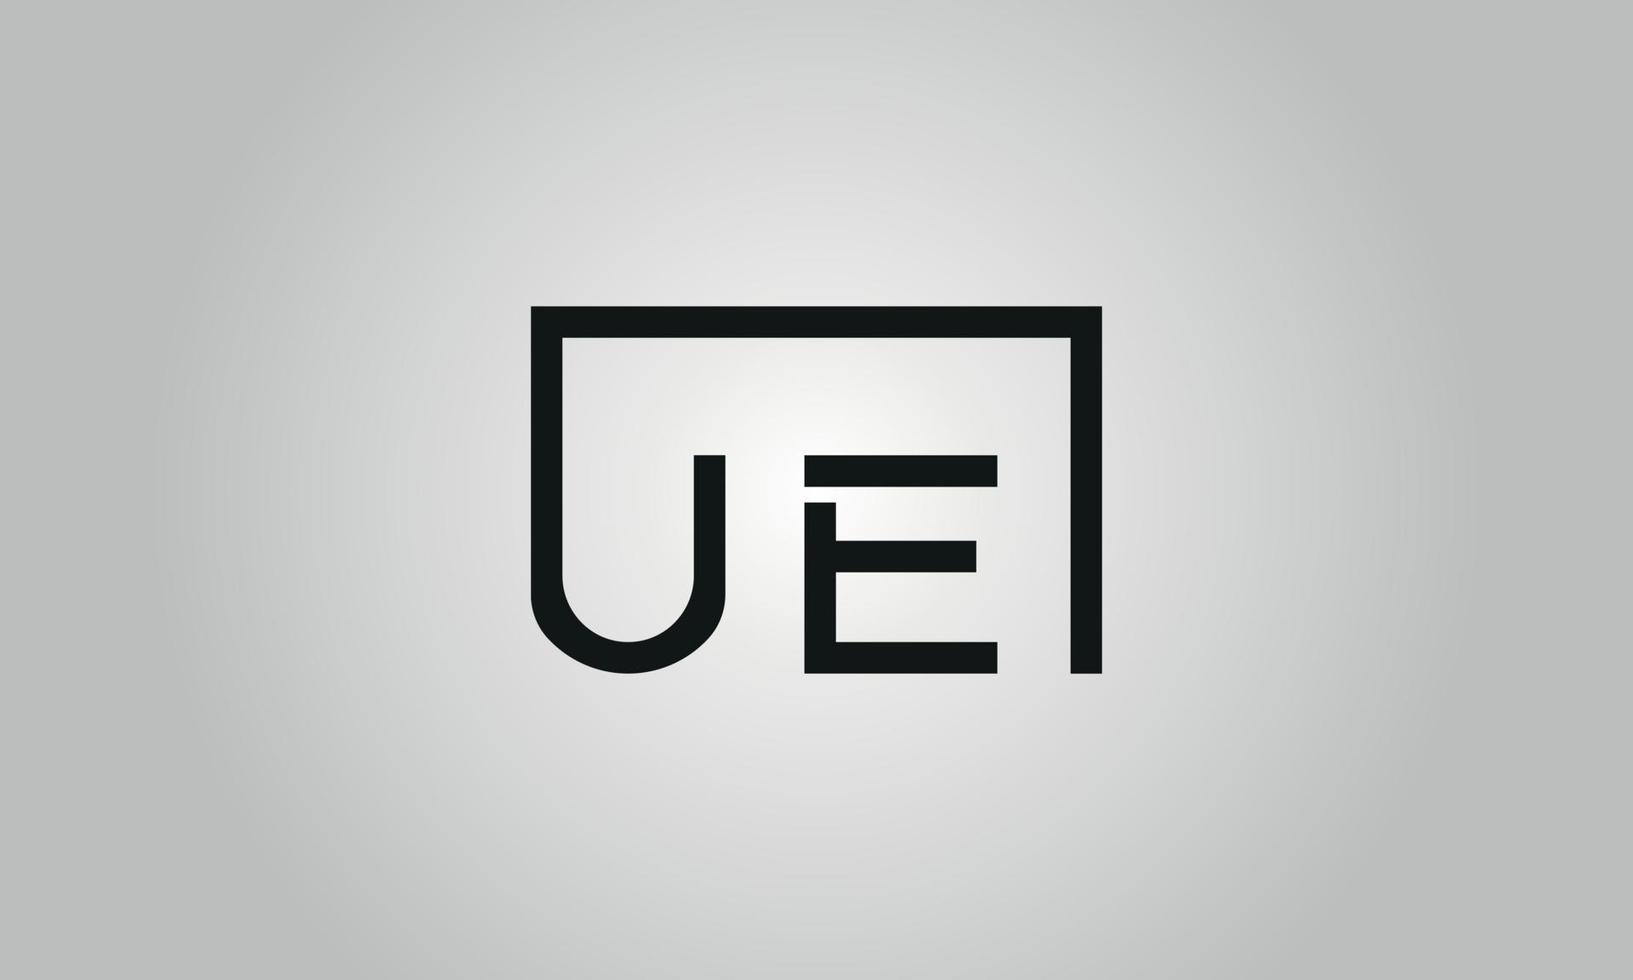 création de logo lettre ue. logo ue avec forme carrée dans le modèle de vecteur gratuit de vecteur de couleurs noires.